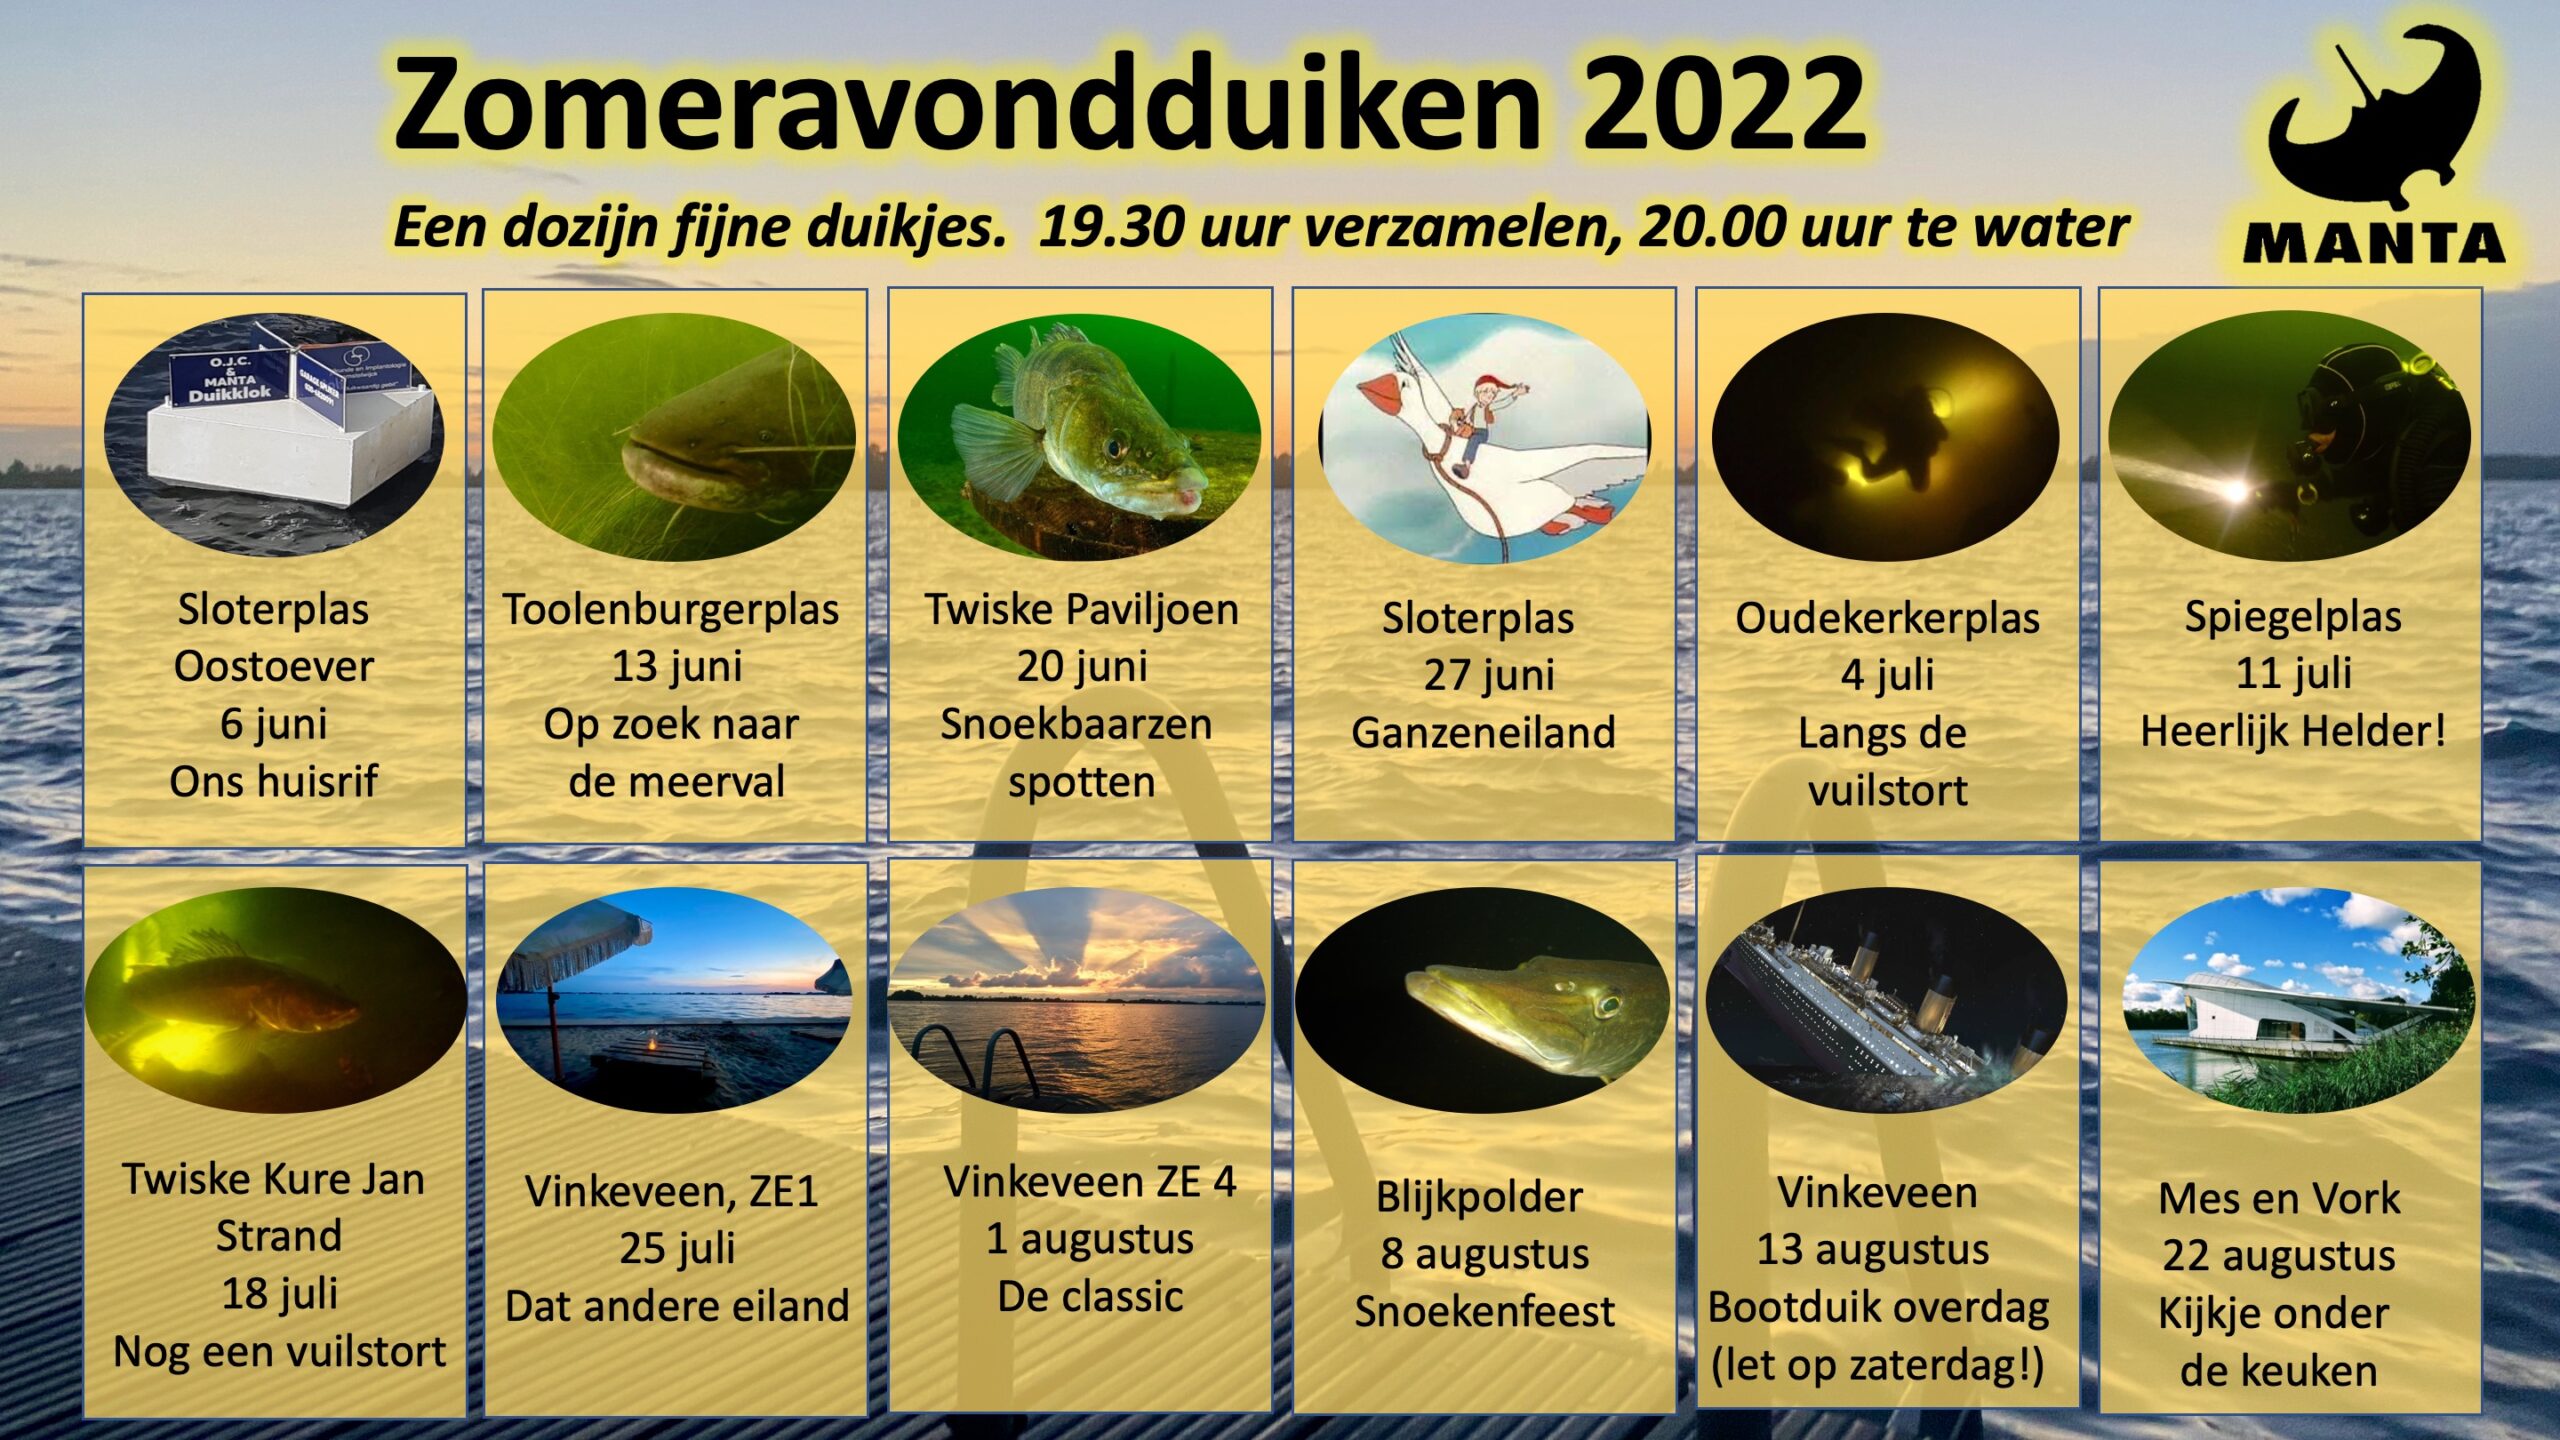 Zomeravondduiken 2022 - Vinkeveen ZE4